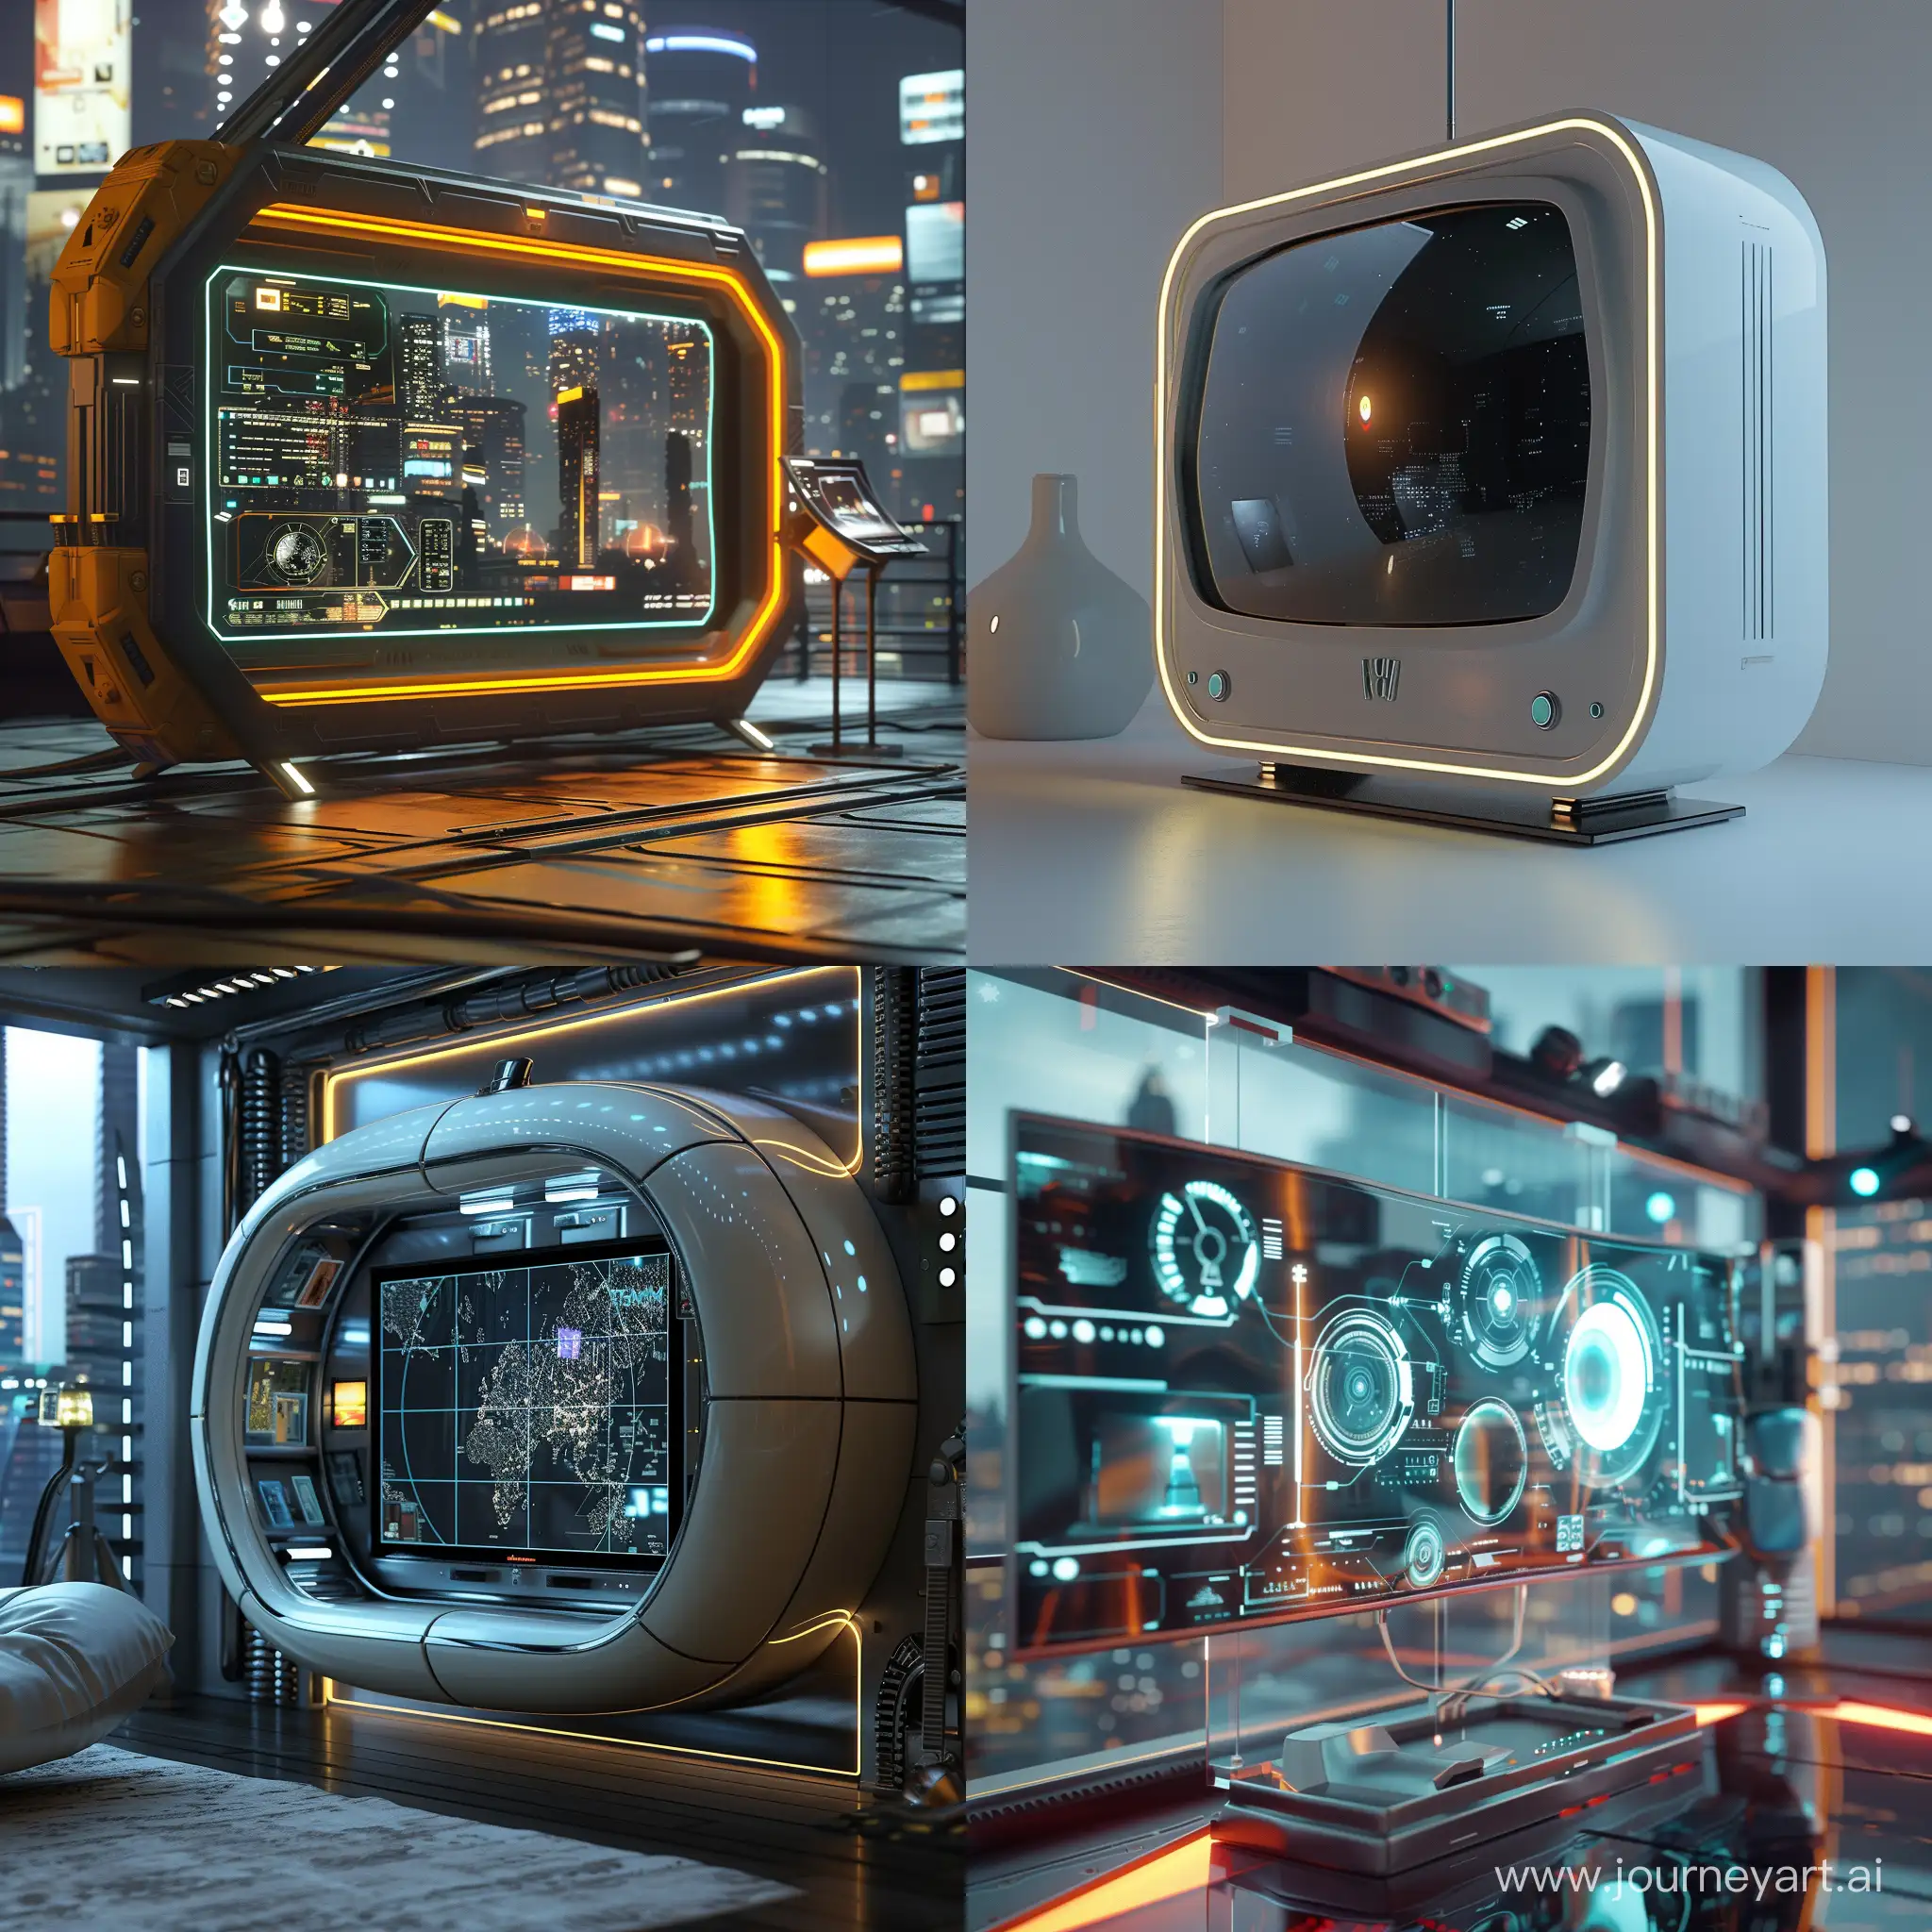 Futuristic TV, world of high tech, octane render